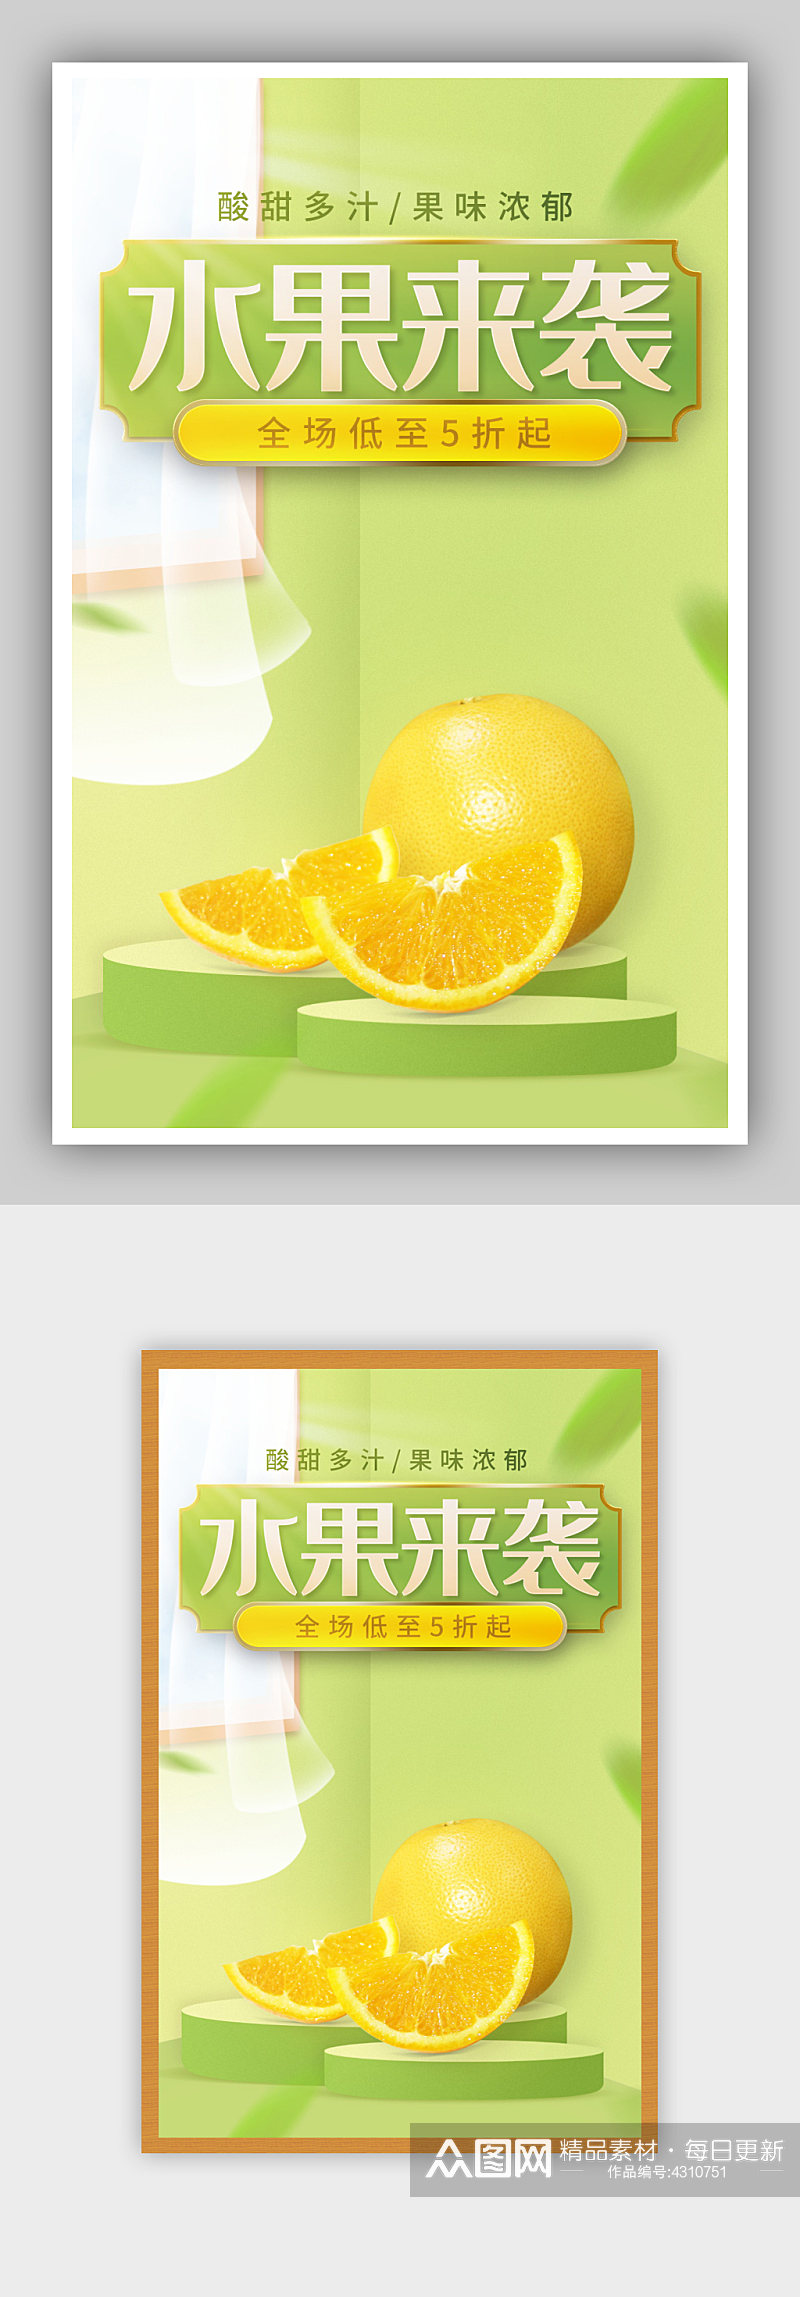 绿色风格橙子水果促销海报素材